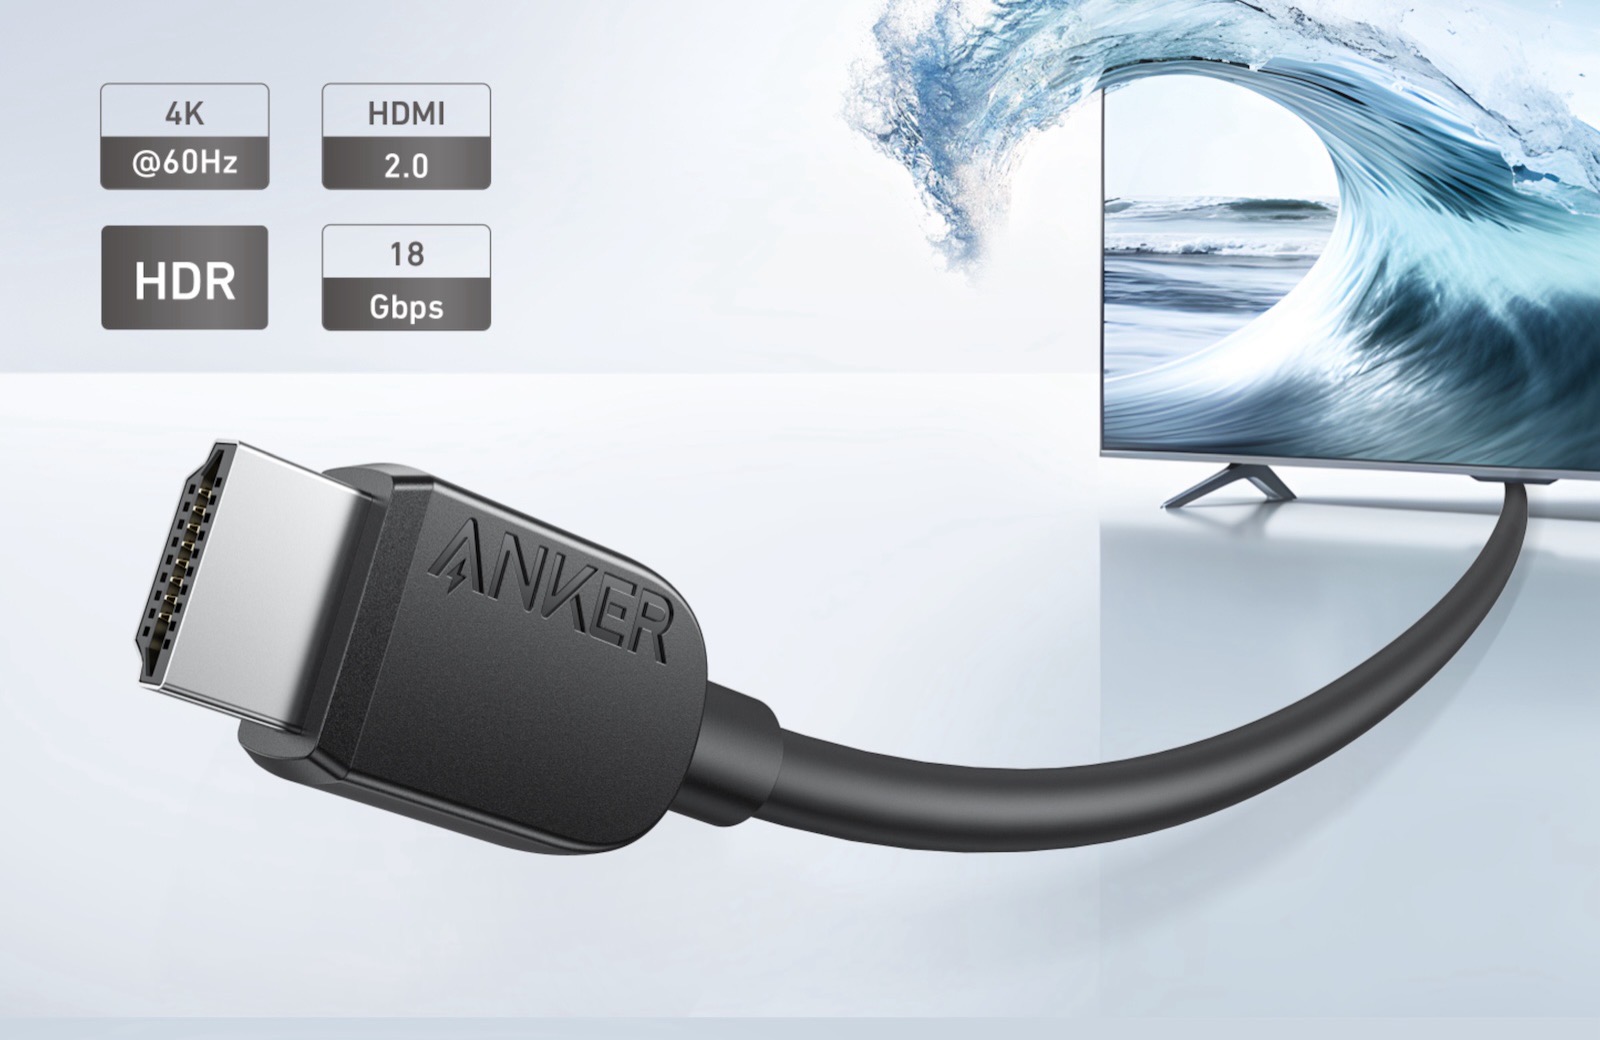 Anker-new-4k-8k-cable.jpg